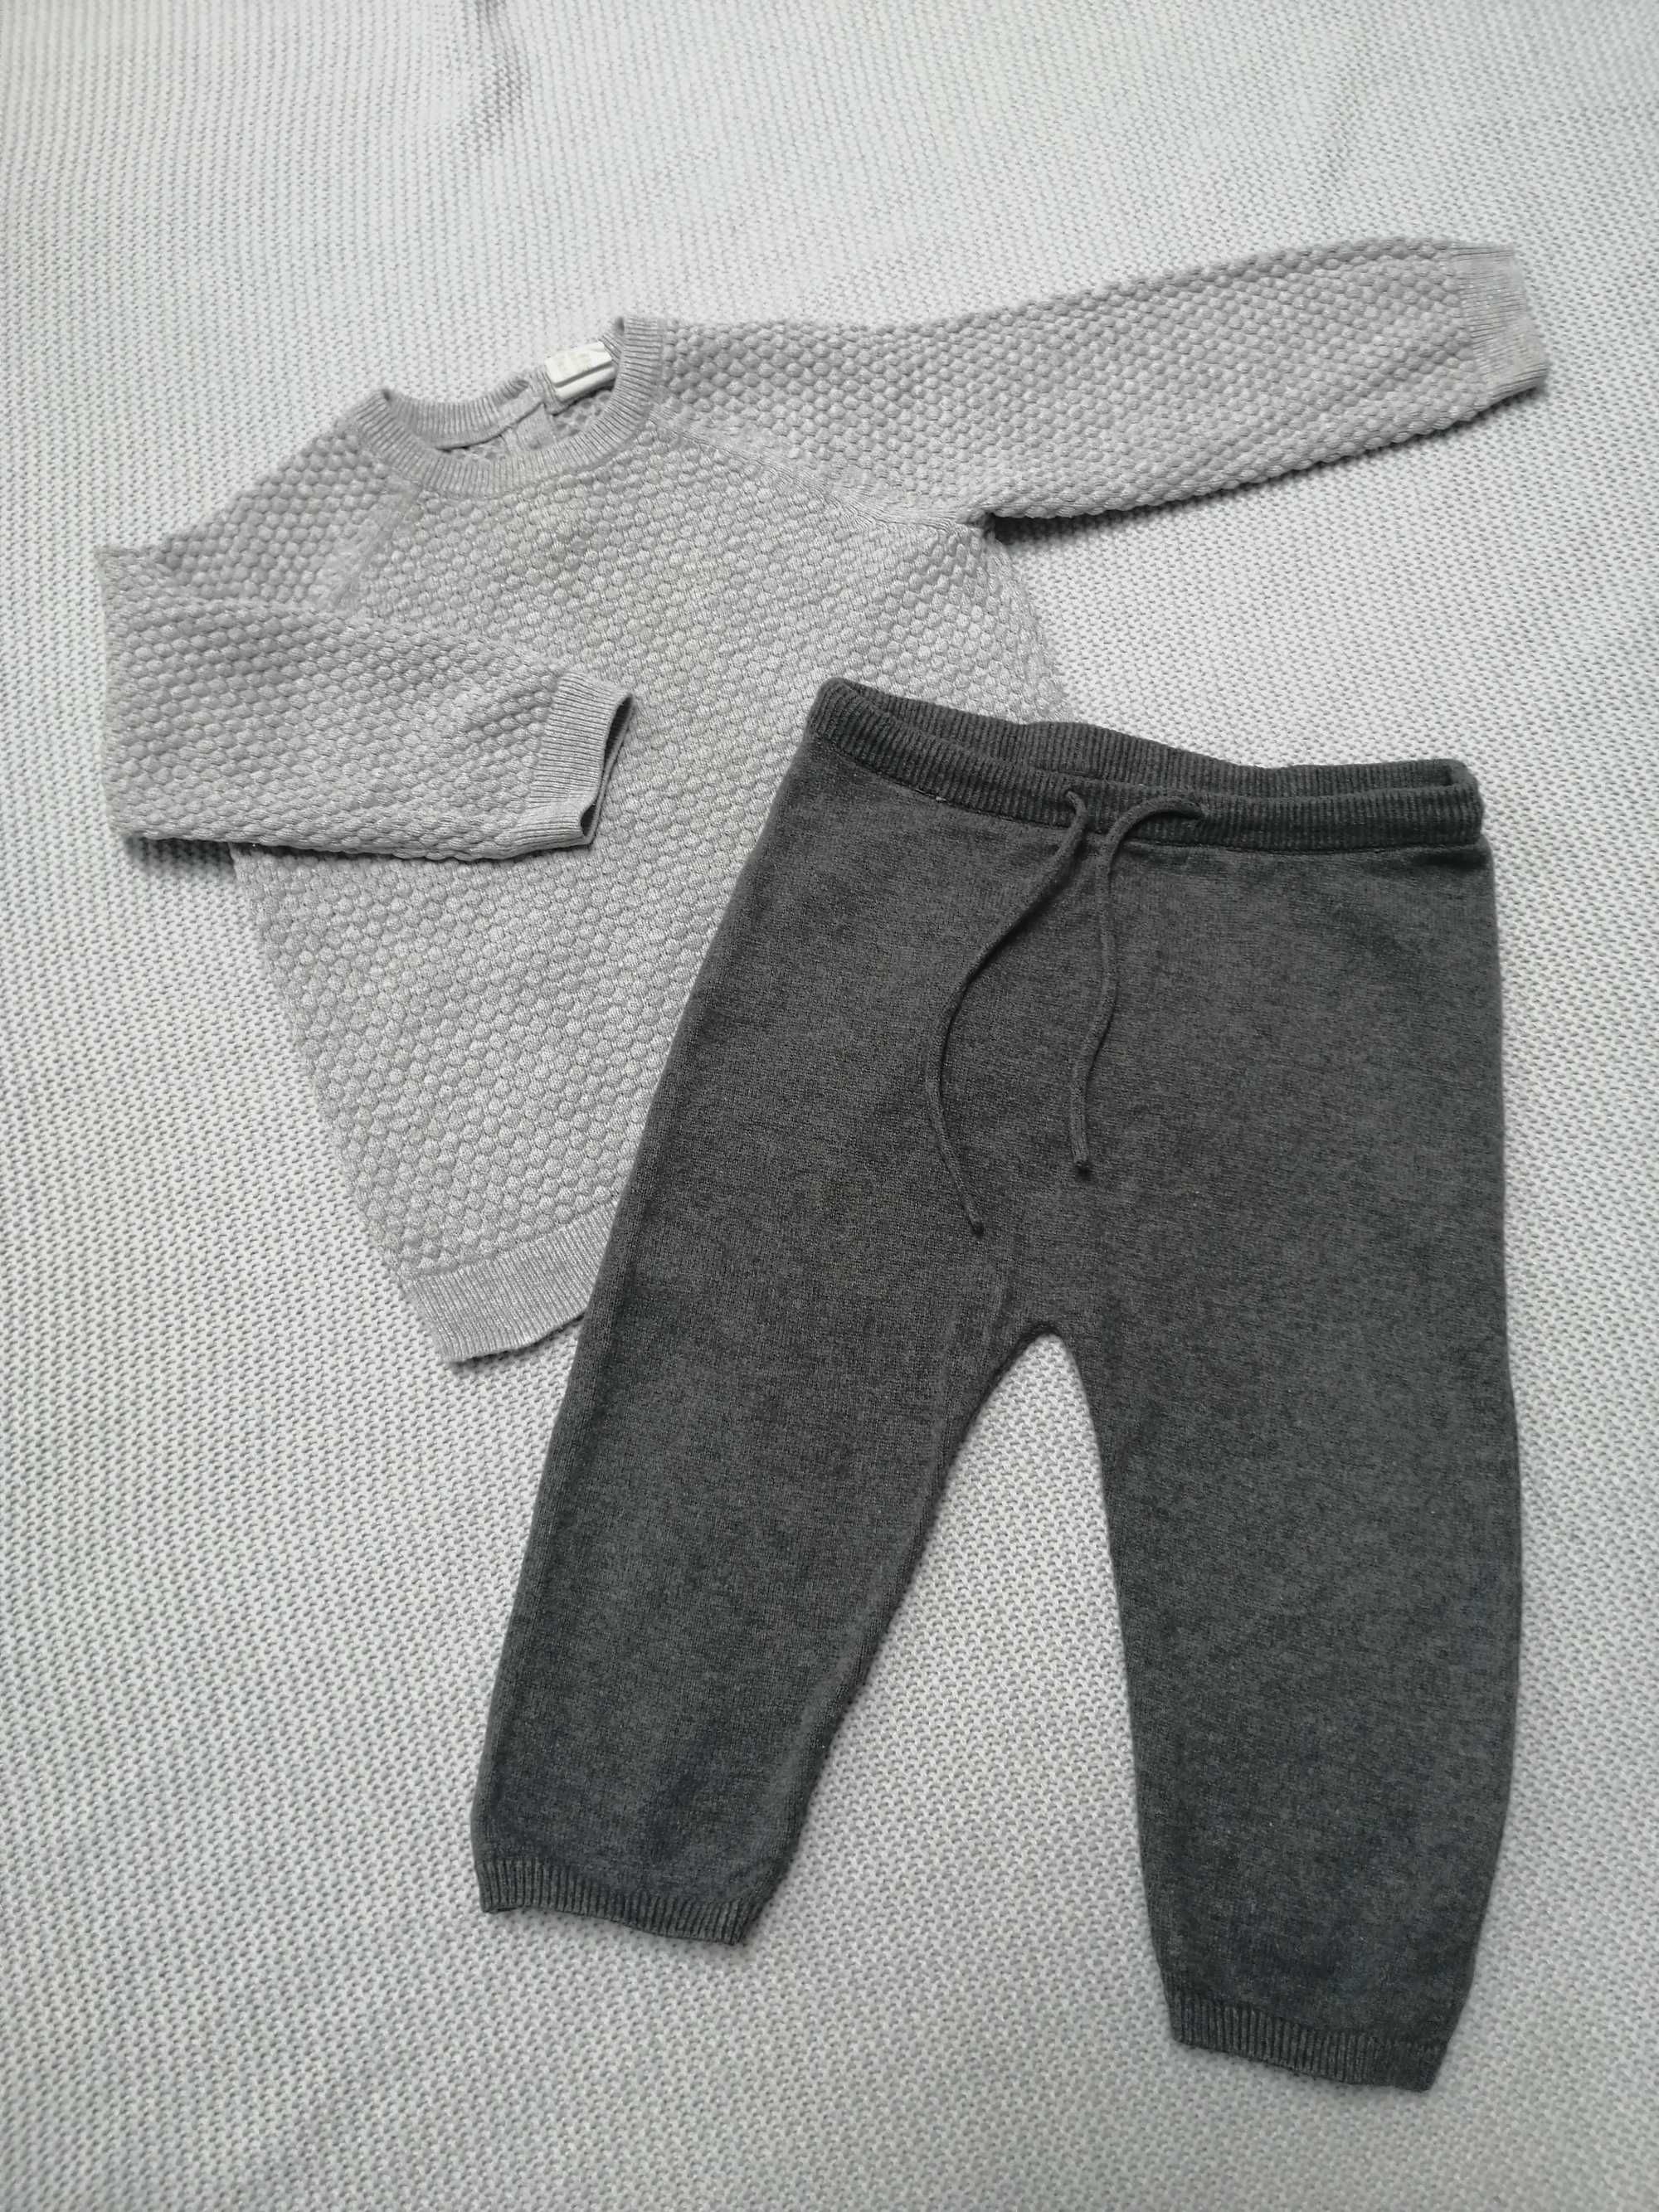 Komplet niemowlęcy/dziecięcy, sweter+spodnie, H&M, rozmiar 80/86